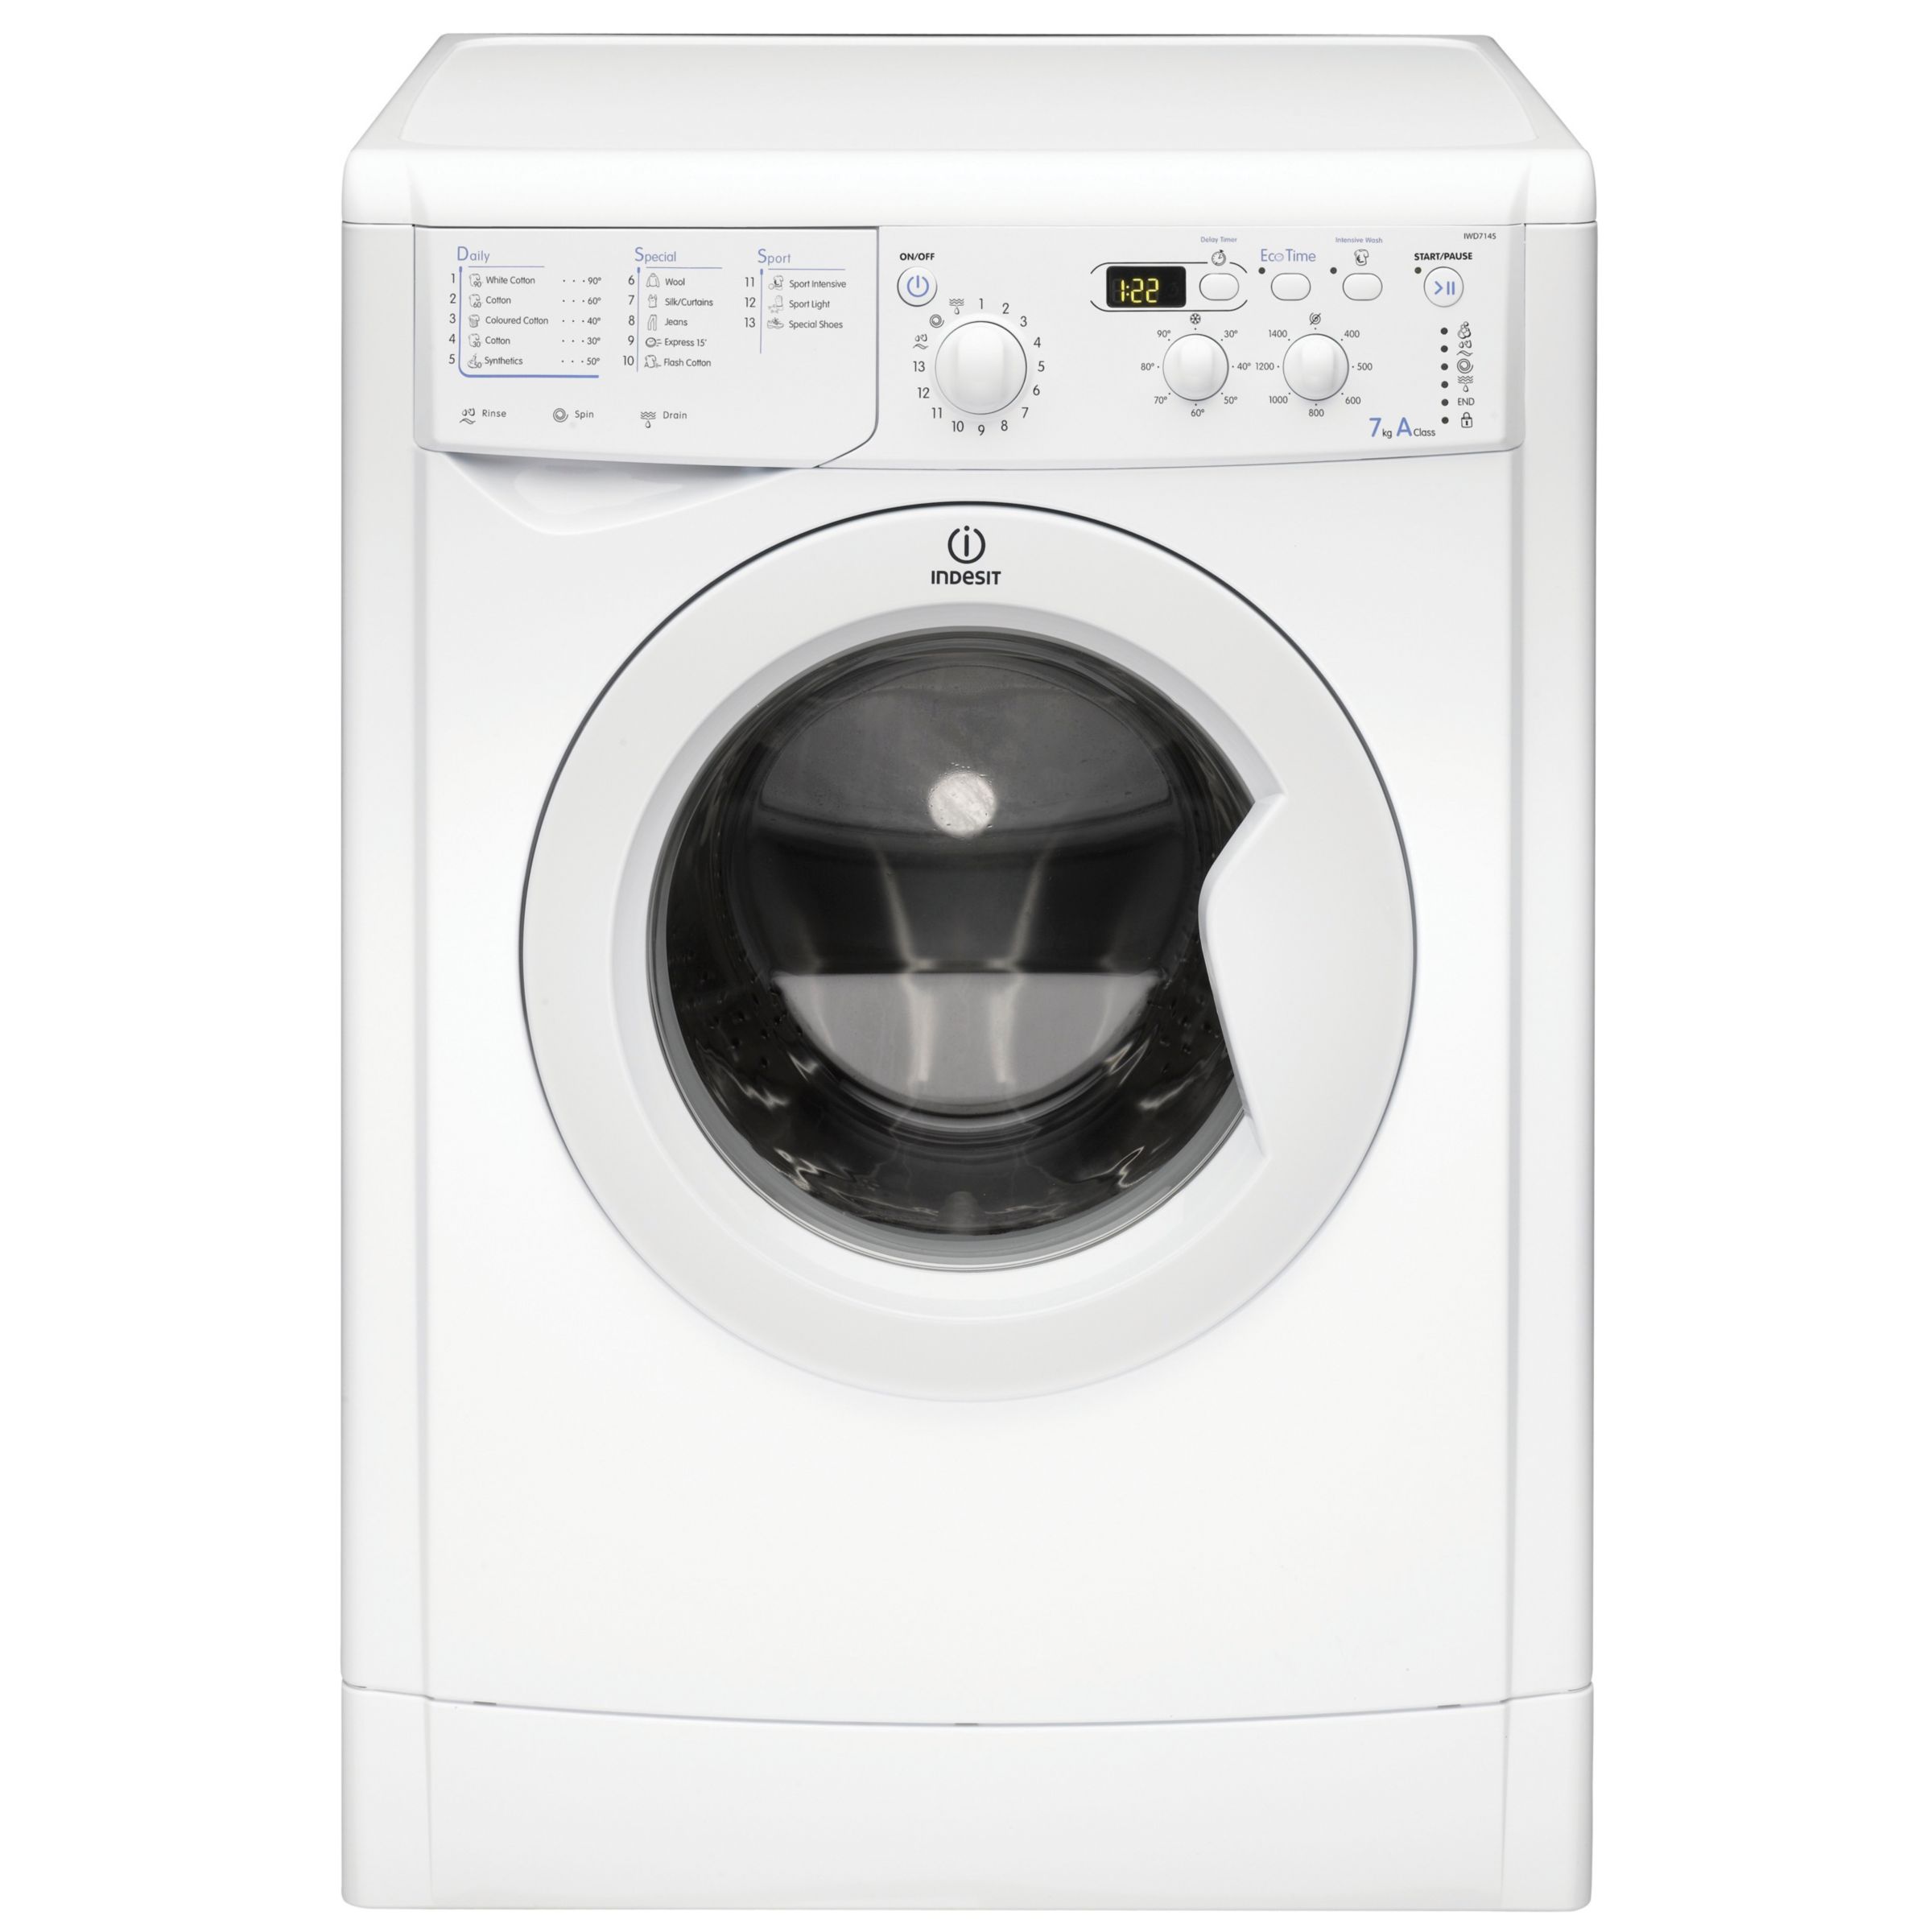 Indesit IWD7145 Washing Machine, White at John Lewis